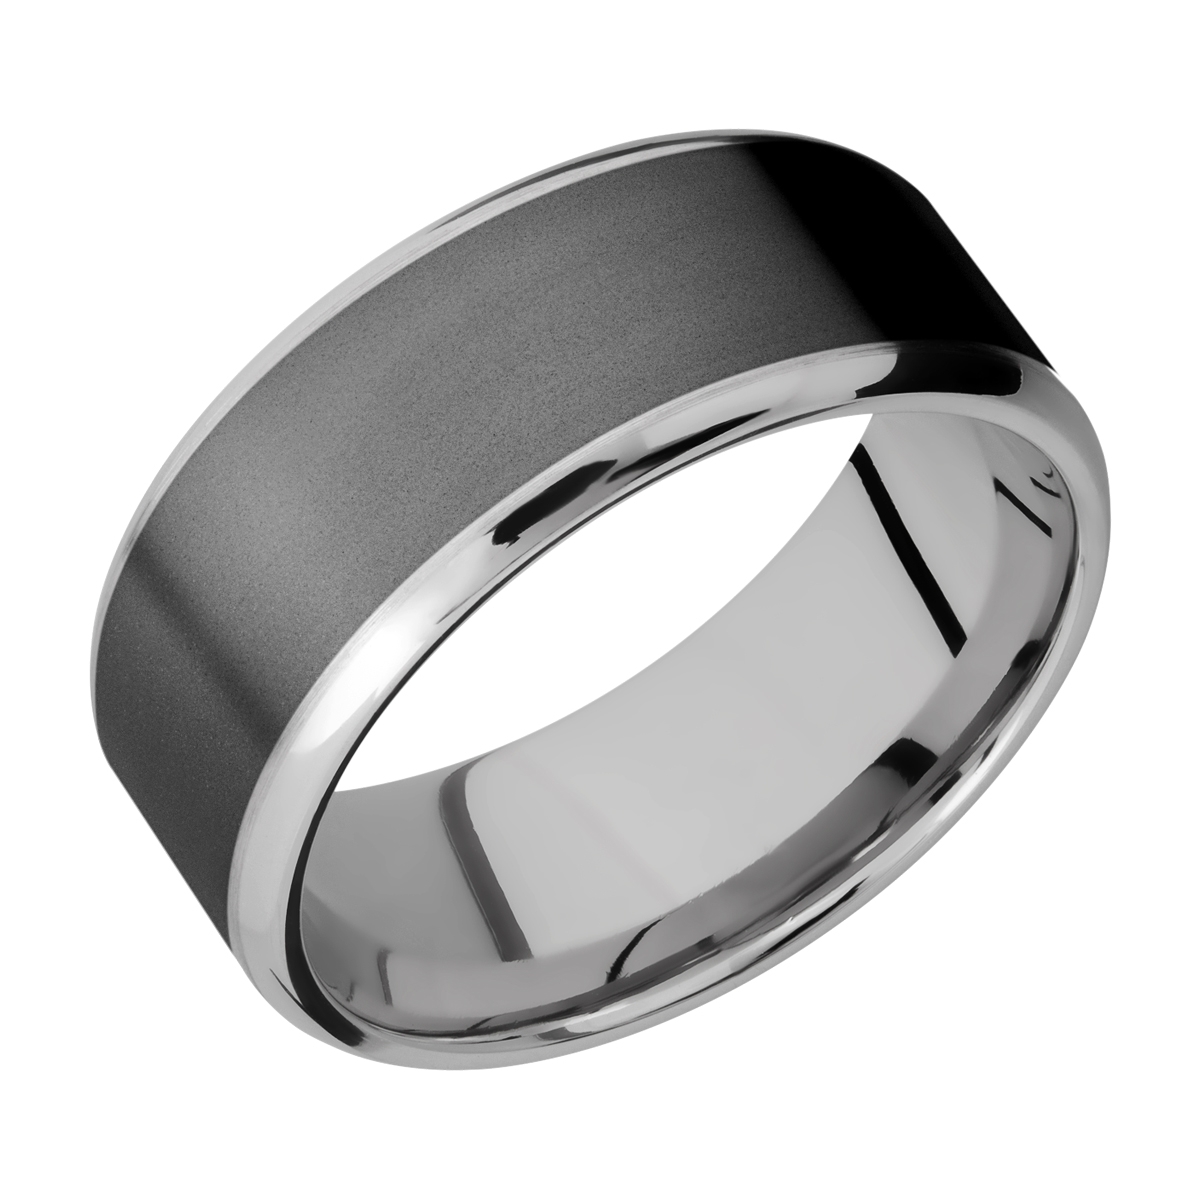 Lashbrook PF9B17(NS)/ZIRCONIUM Titanium Wedding Ring or Band